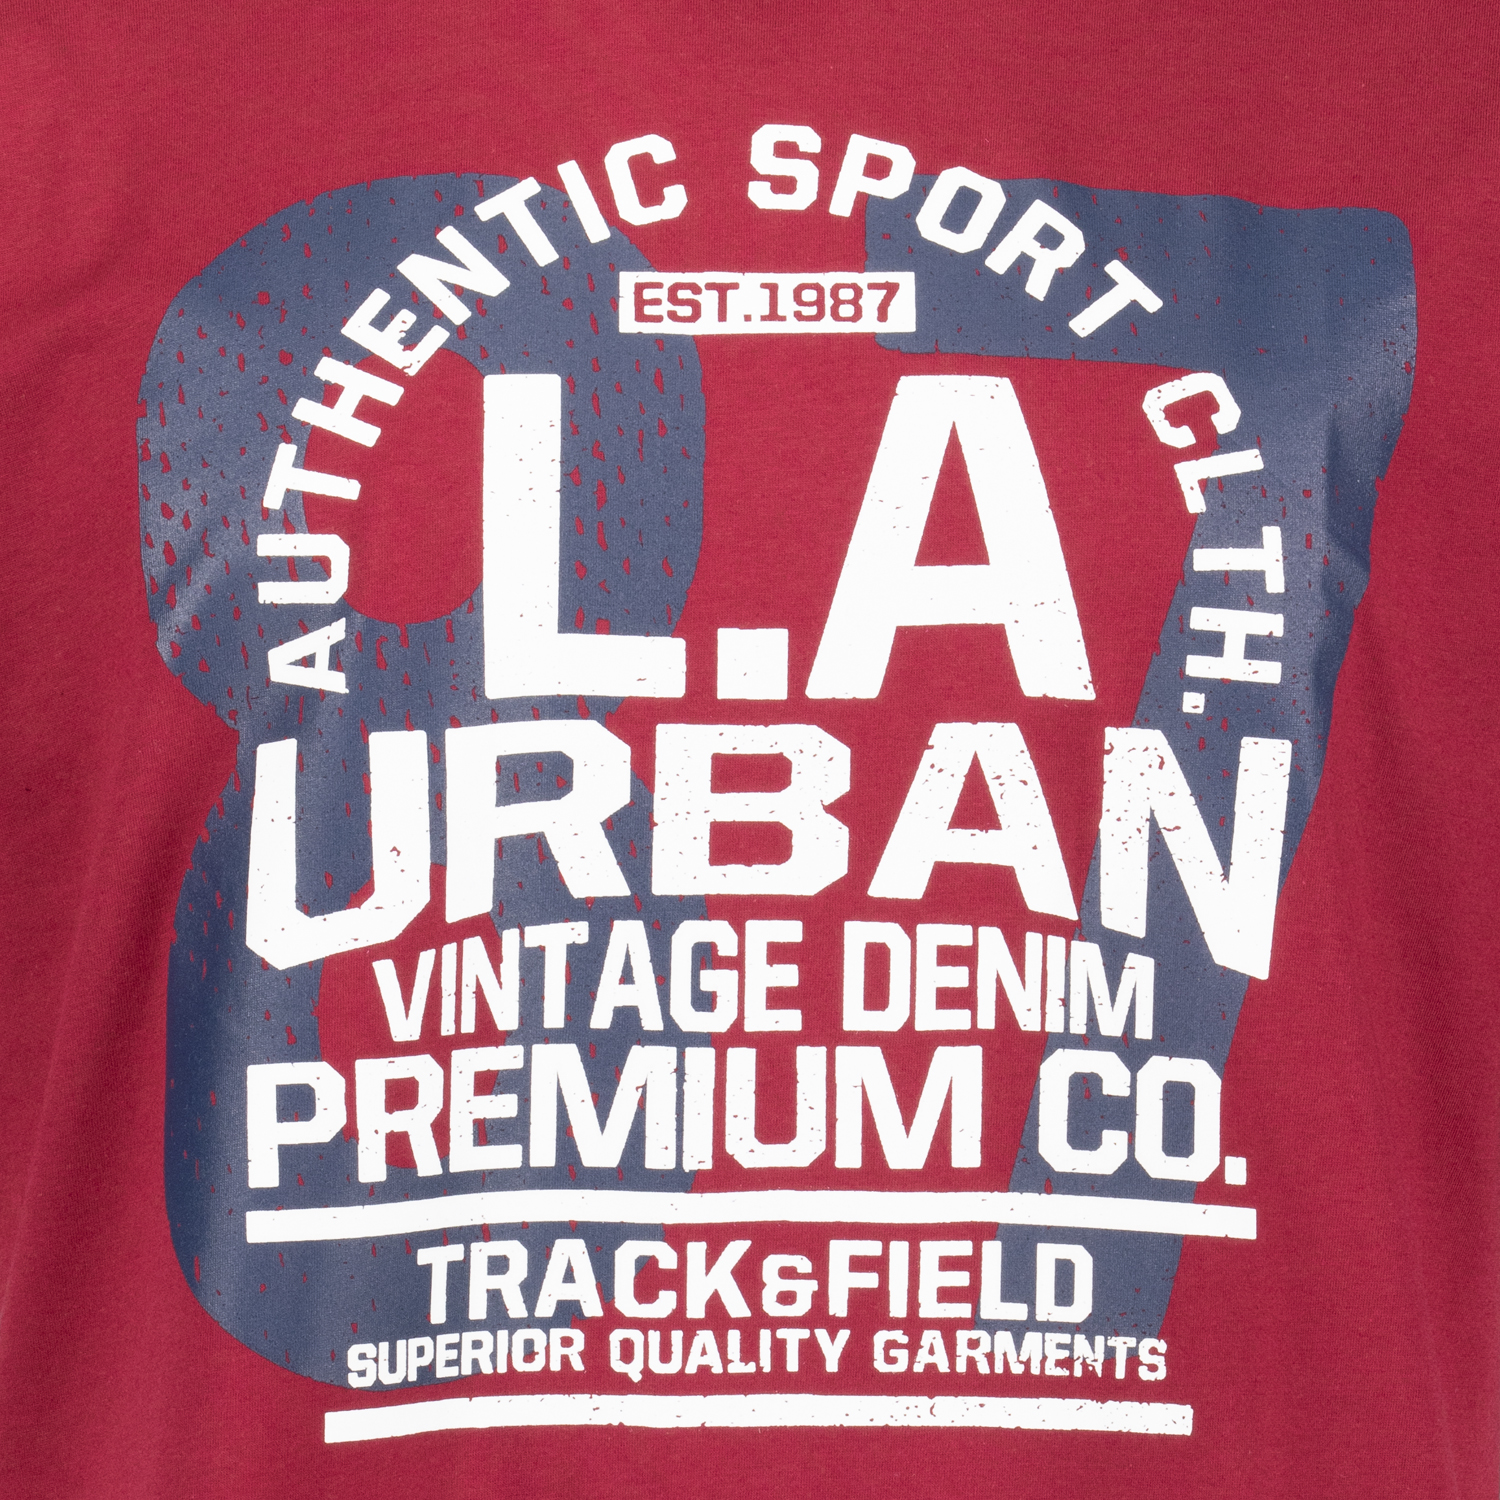 Herren T-Shirt mit Print weinrot von ADAMO COMFORT FIT Serie URBAN in Übergrößen bis 14XL